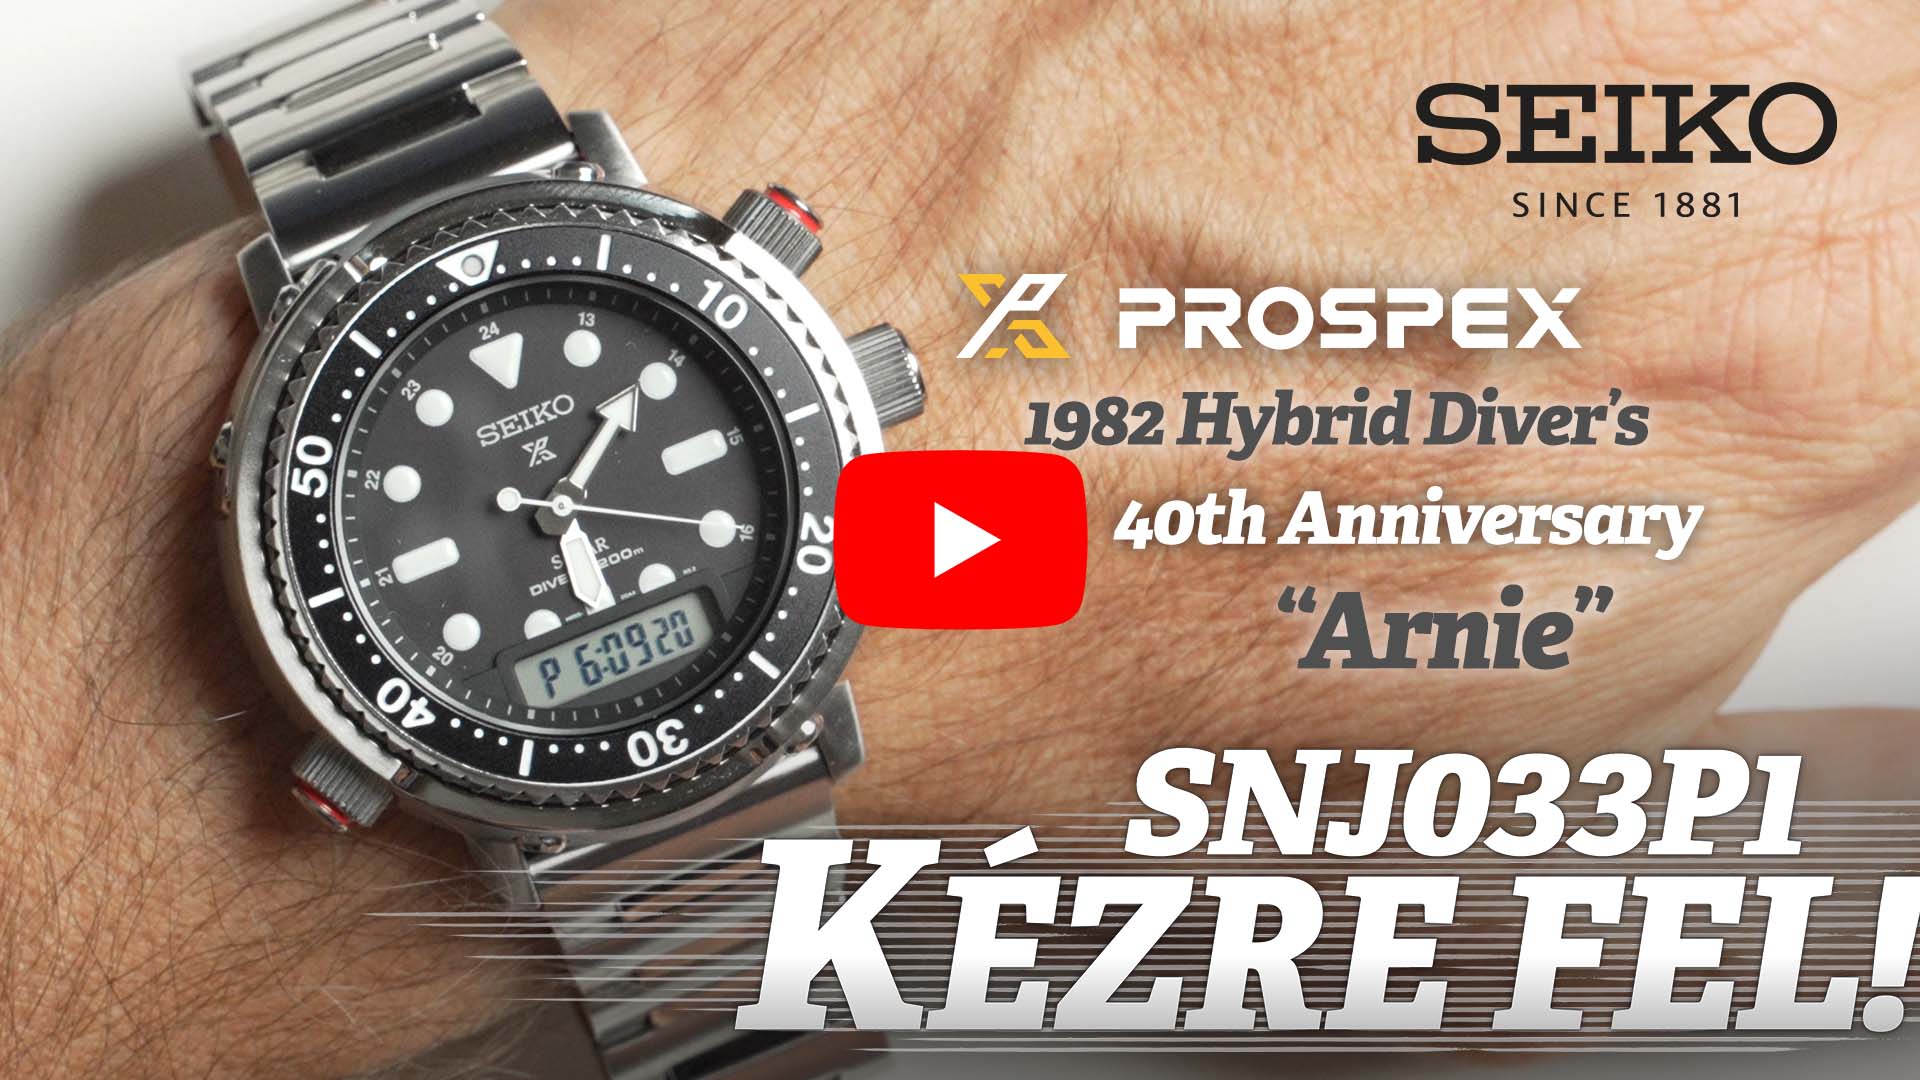 Kézre Fel! – Seiko Prospex 1982 Hybrid Diver’s 40th Anniversary “Arnie” SNJ033P1